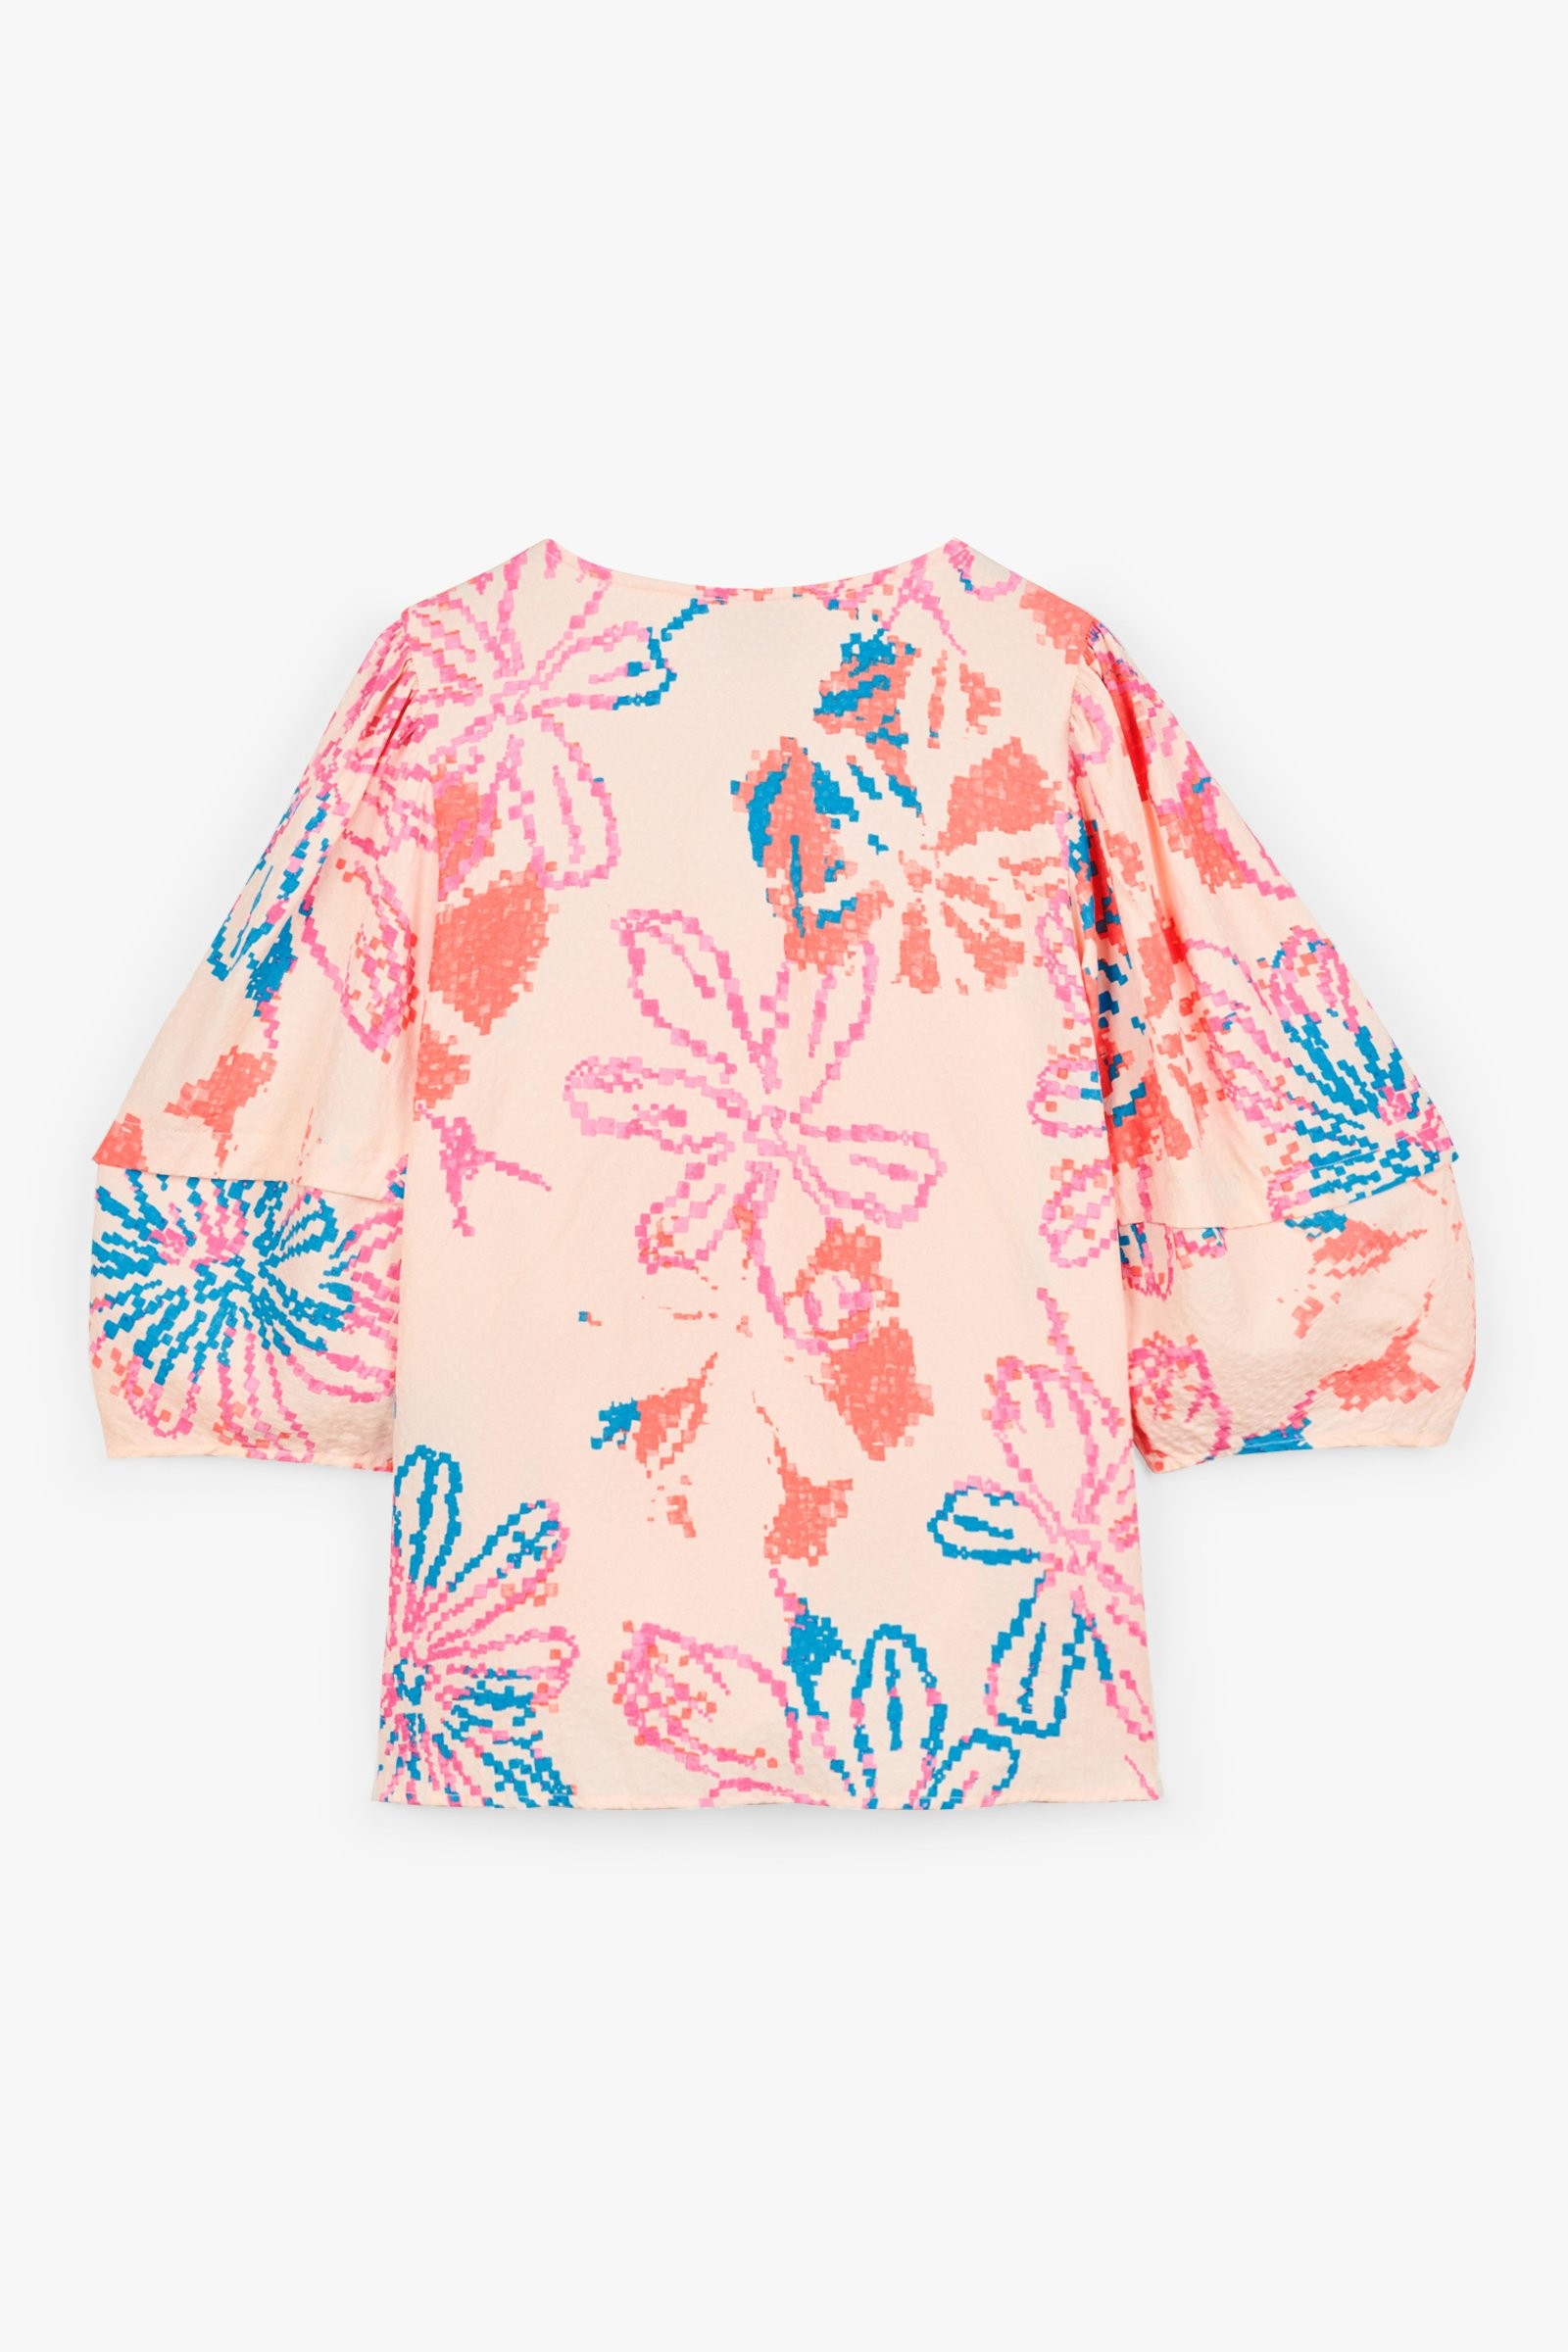 CKS Dames - IRIKA - blouse long sleeves - pink